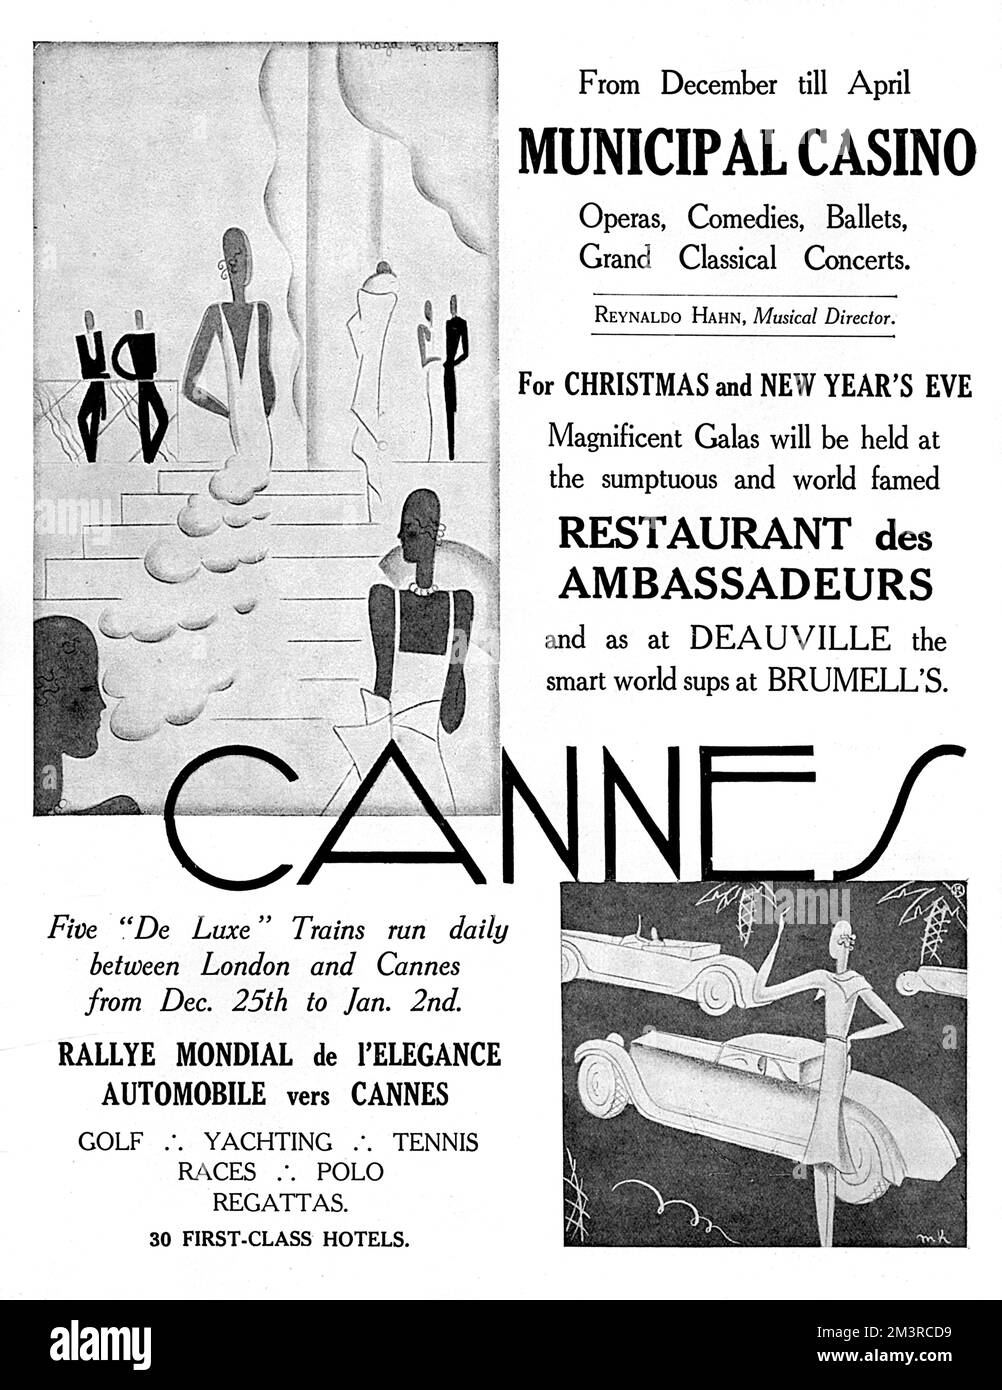 Ganzseitige Werbung in der Nähe von Cannes an der französischen Riviera, in der die einfache Verkehrsanbindung (fünf Luxuszüge von London jeden Tag zwischen Weihnachten und Neujahr), das städtische Kasino und das Restaurant des Ambassadeurs beschrieben werden. Datum: 1929 Stockfoto